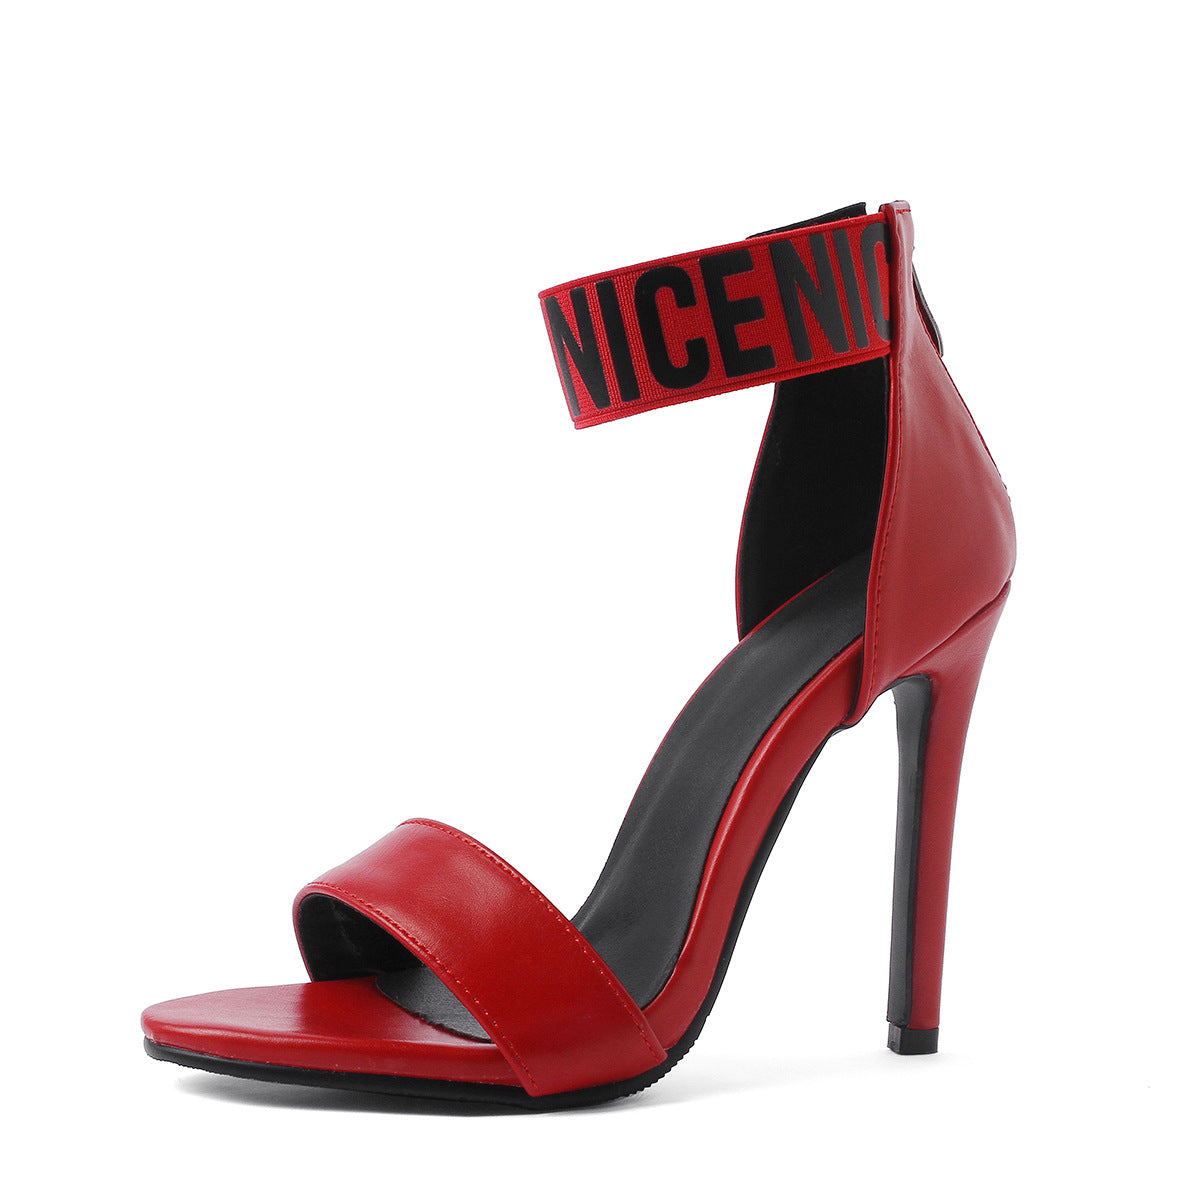 Women's Leisure Fashion Ring Strap High Heel Stiletto Summer Shoes Nowena